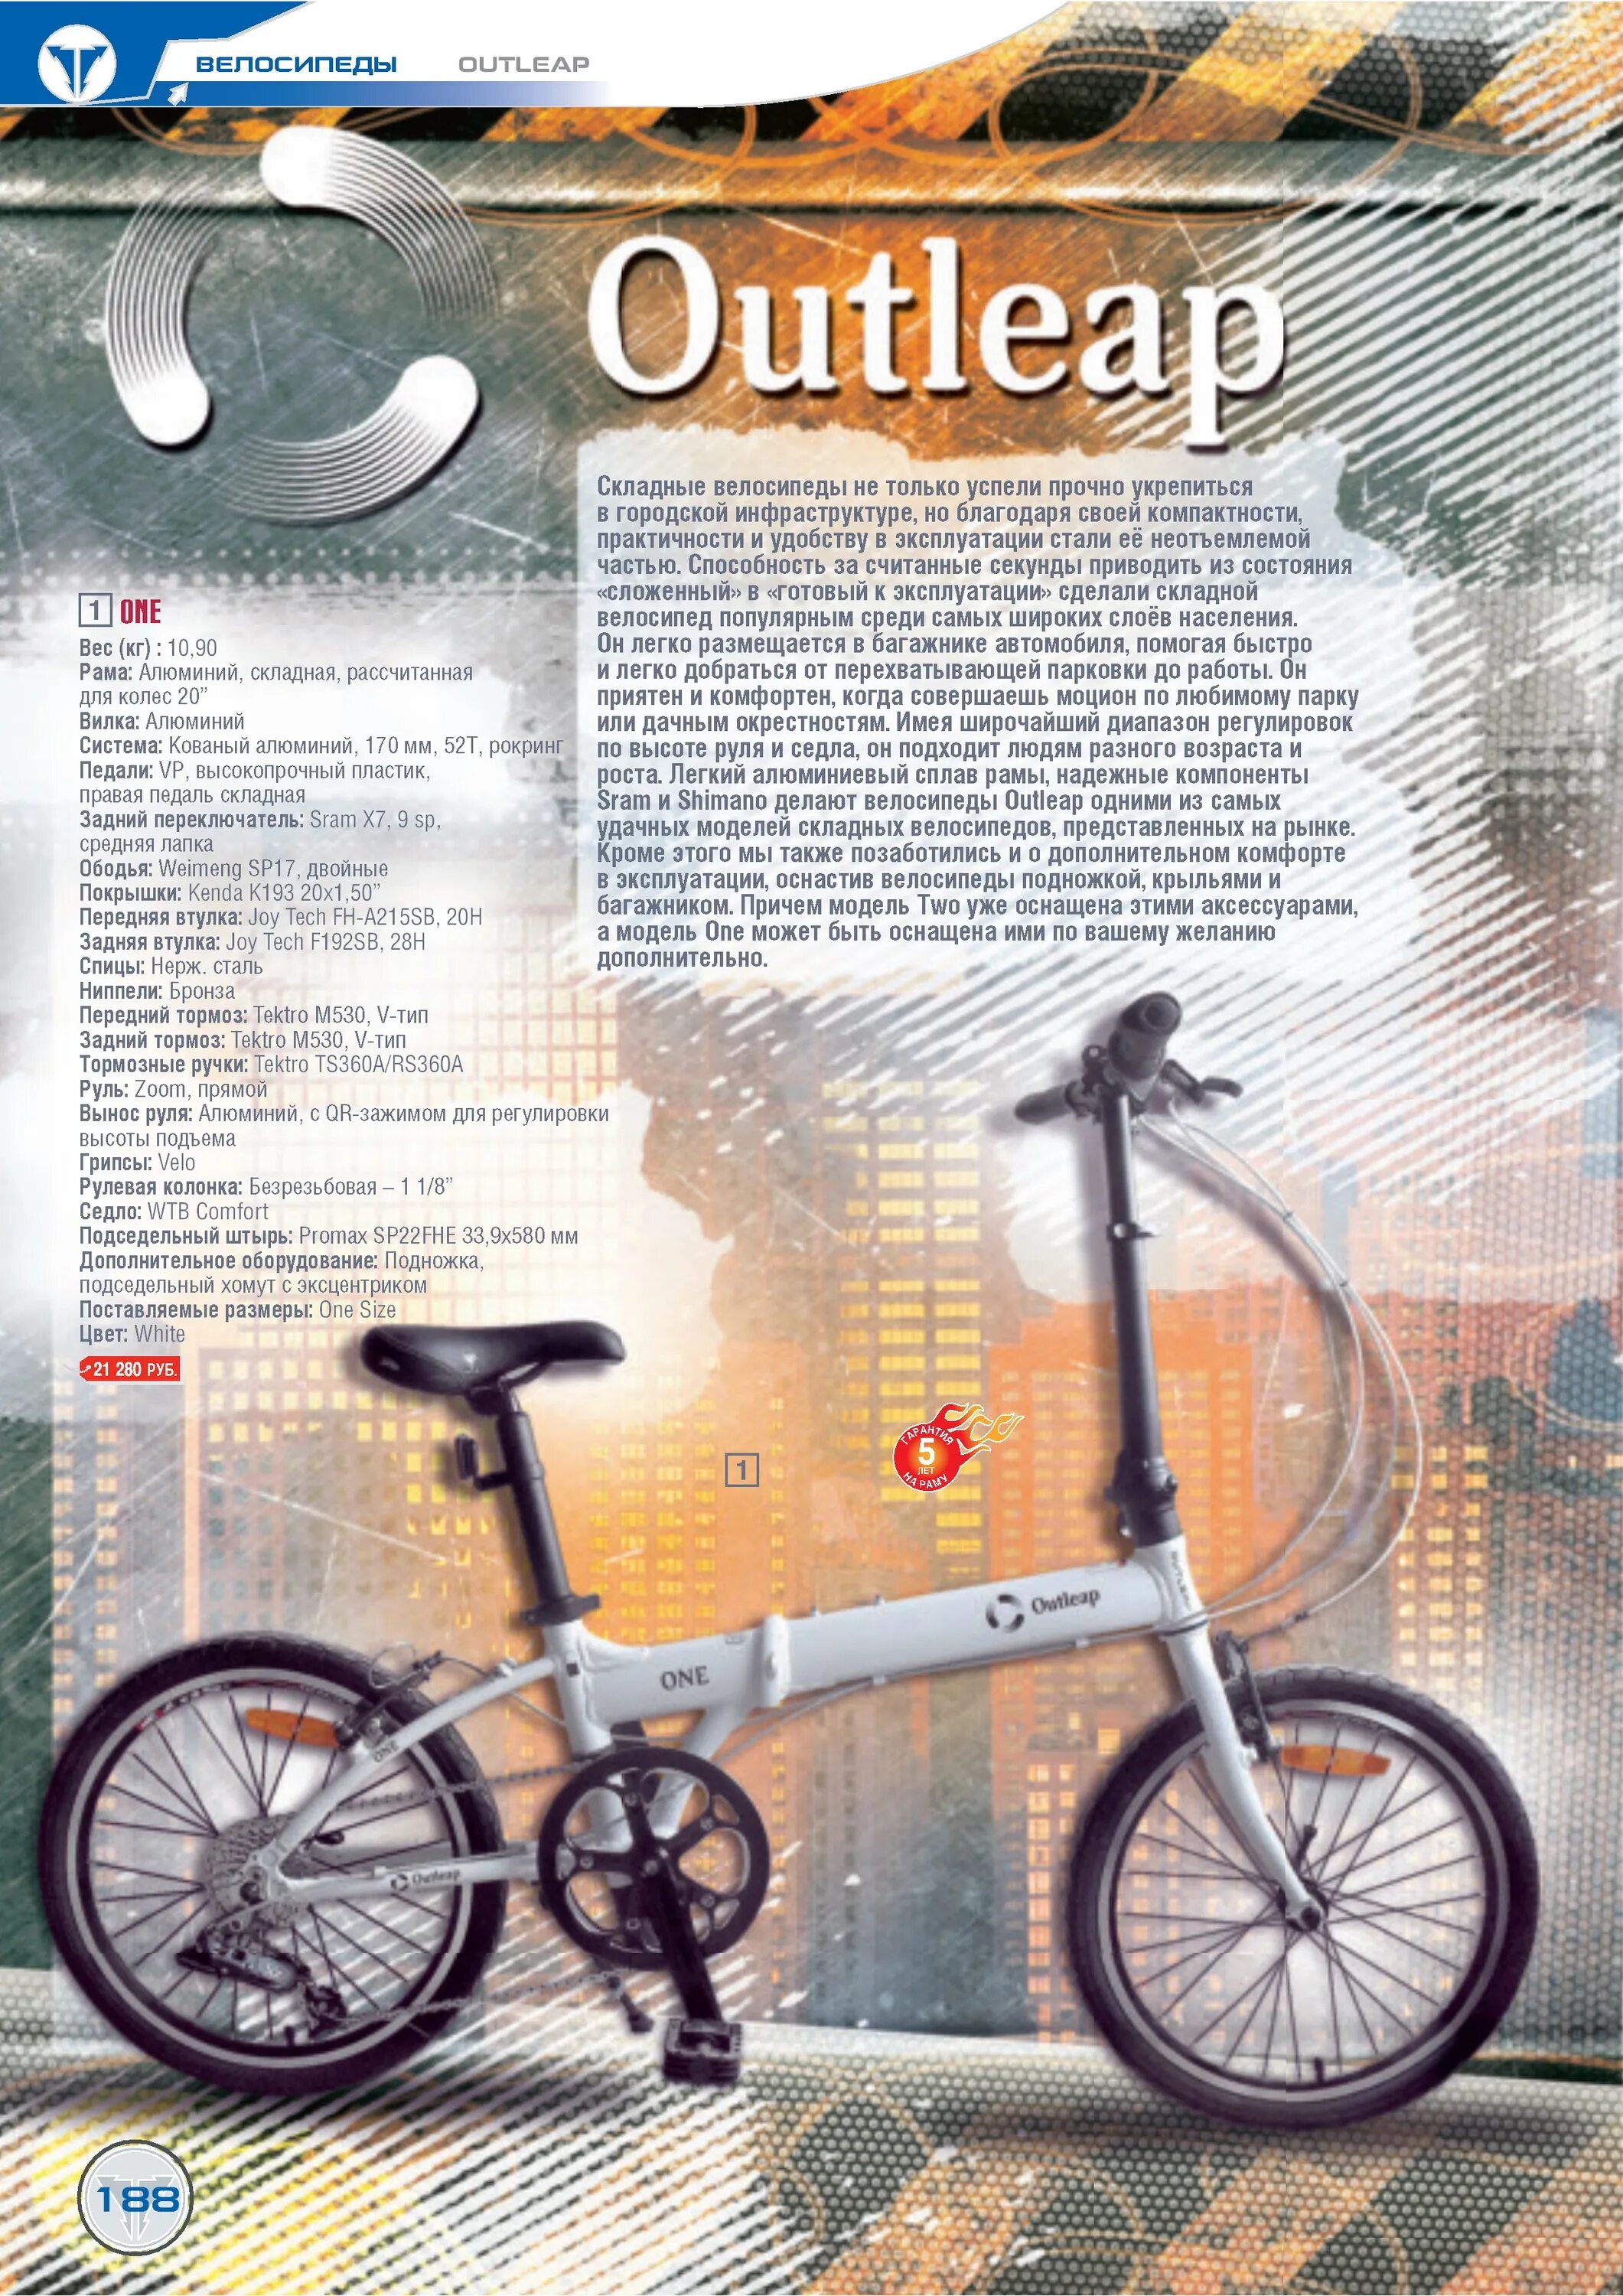 Какой вес выдерживает велосипед. Outleap 16 велосипед. Outleap размер рамы. Ростовка велосипедов Outleap. Размеры велосипедов Outleap.